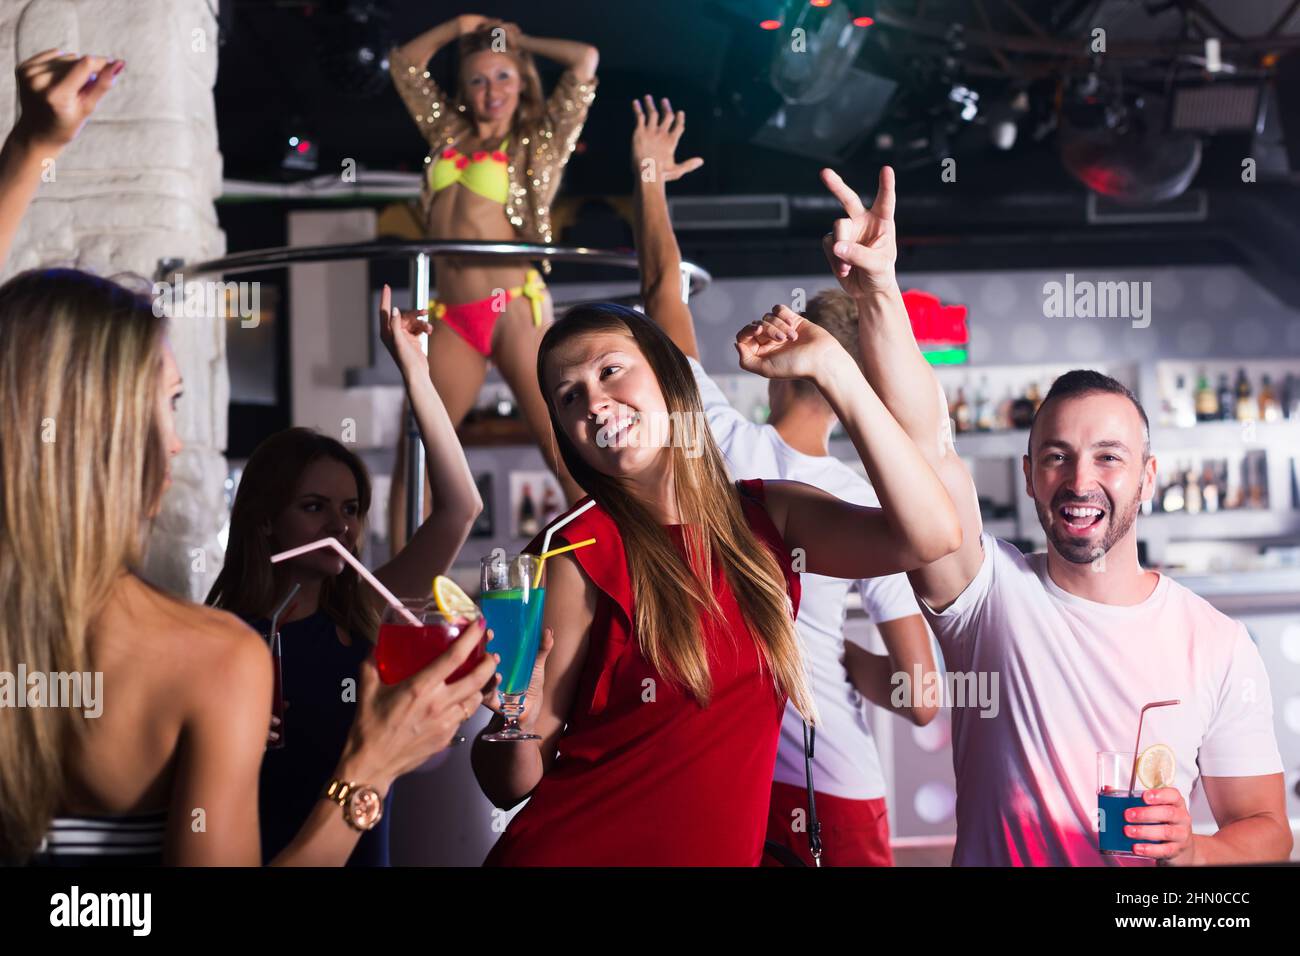 People joying in nightclub Stock Photo - Alamy